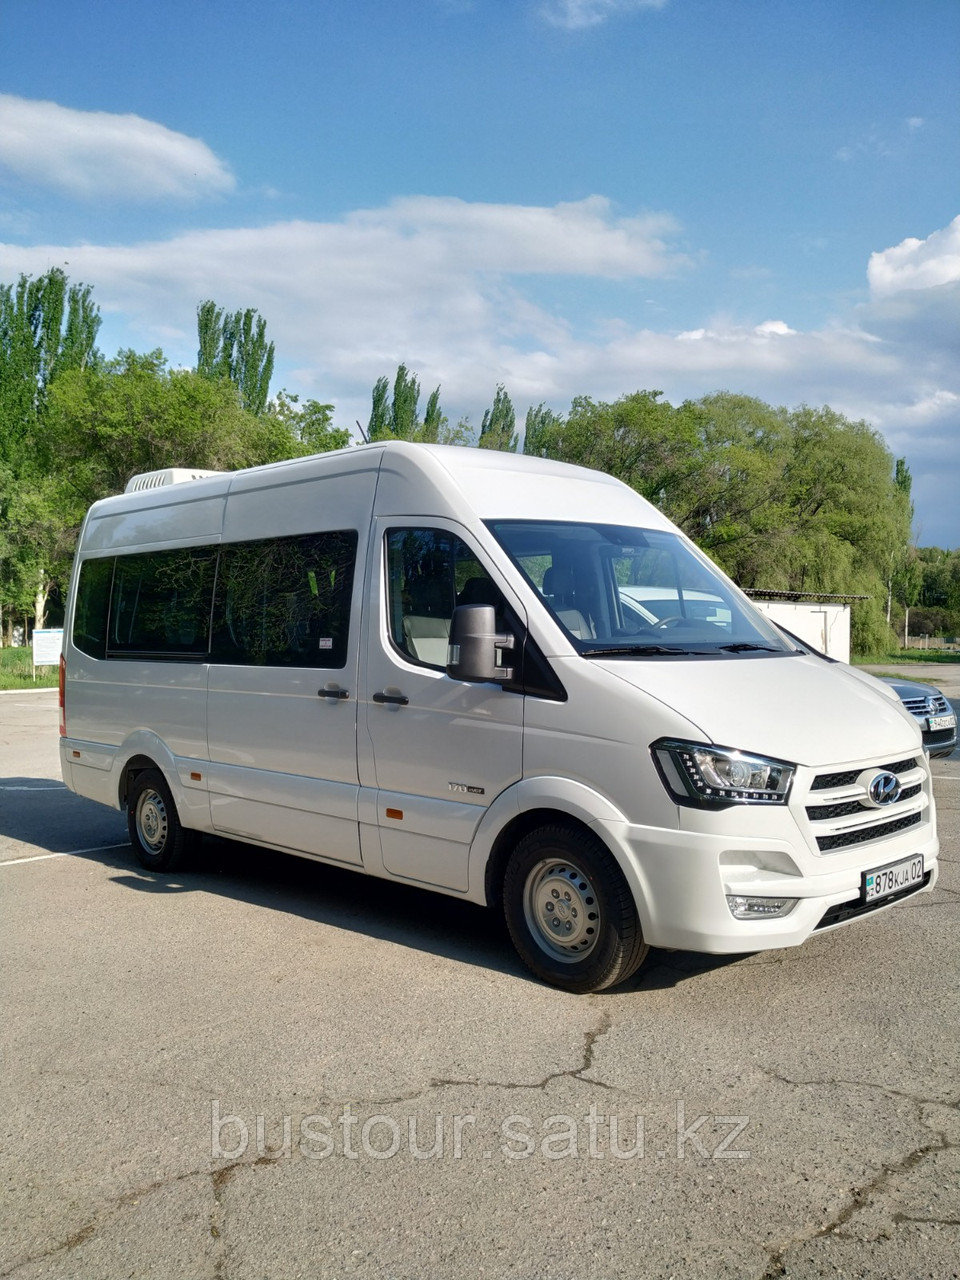 Микроавтобус Hyundai | Заказать в Казахстане | Цены на Satu.kz